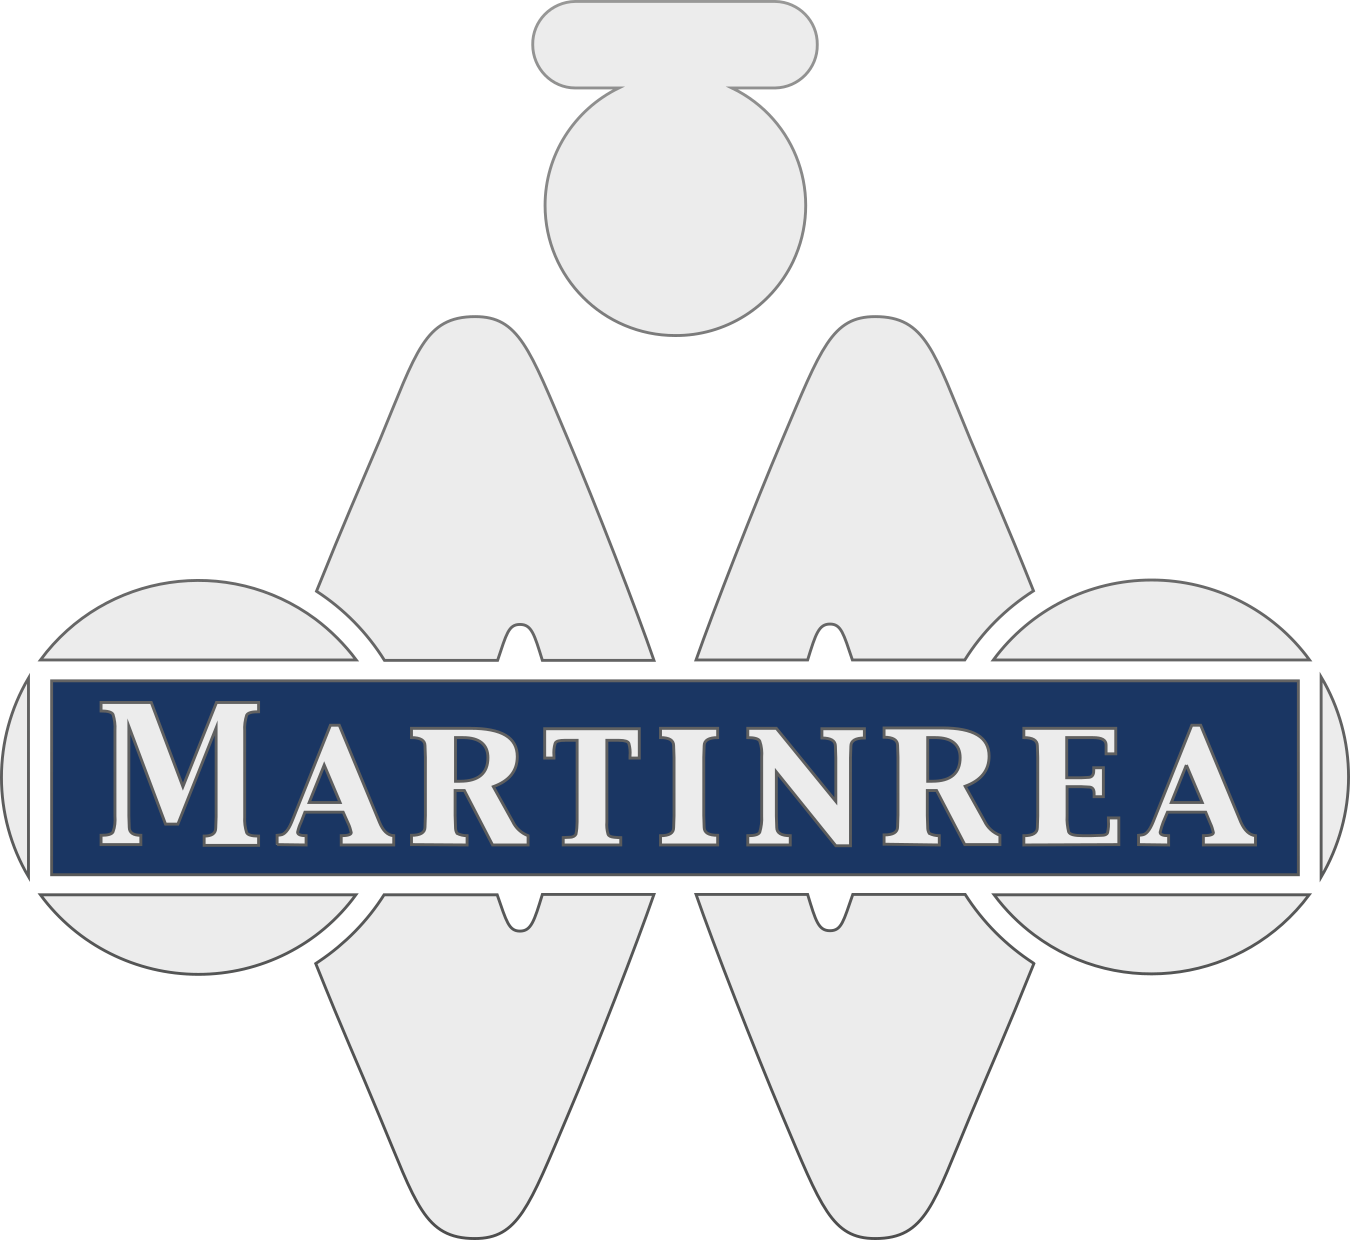 Martinrea International logo pour fonds sombres (PNG transparent)